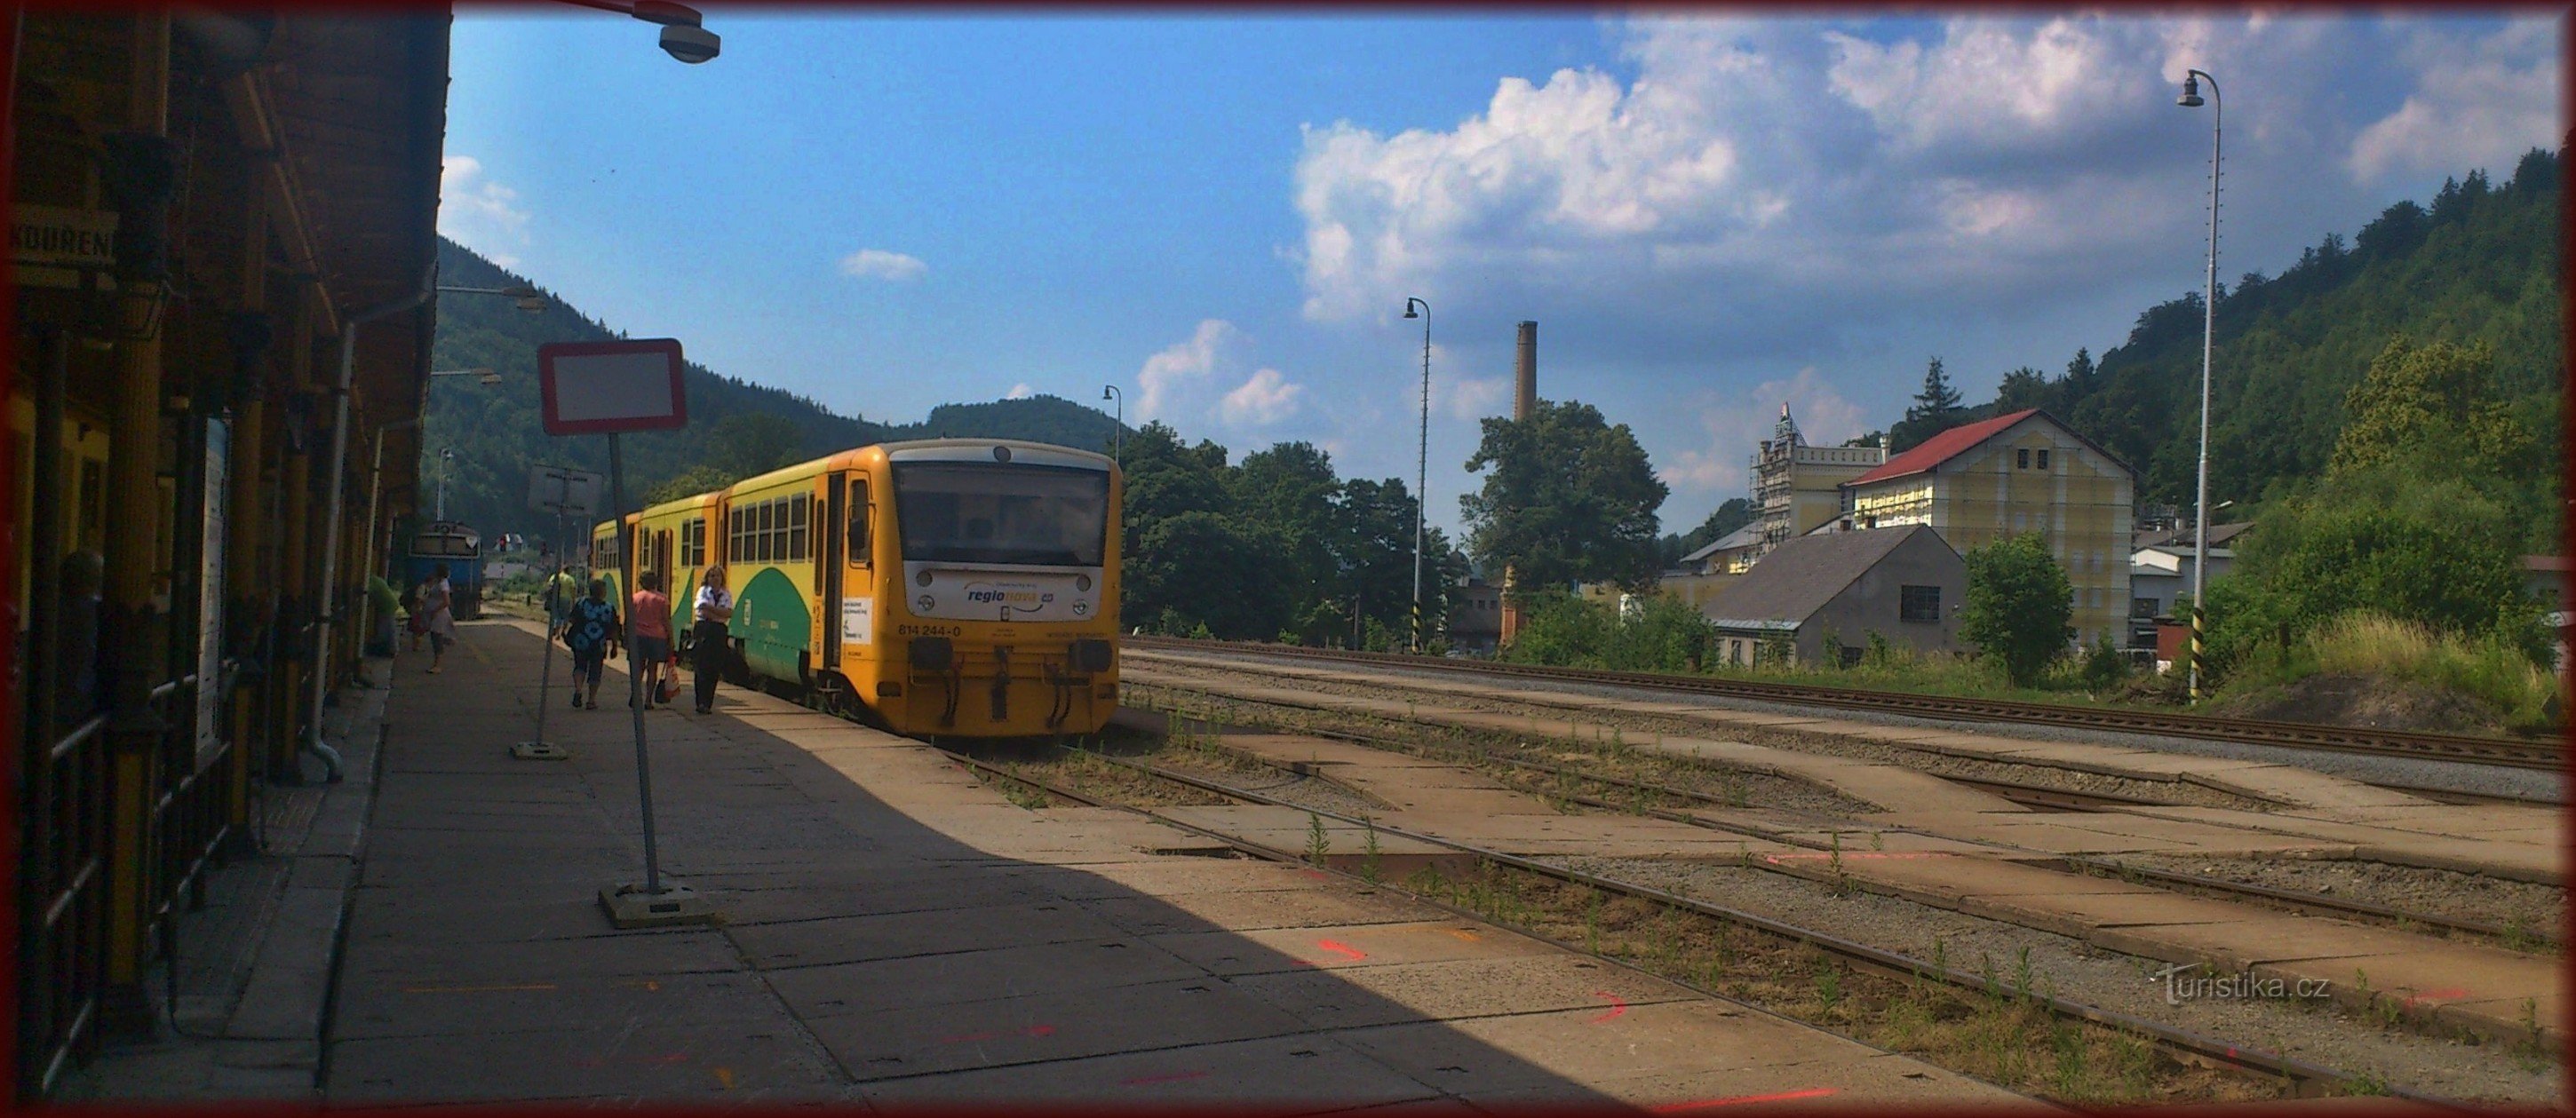 Ганушовице - железнодорожная станция